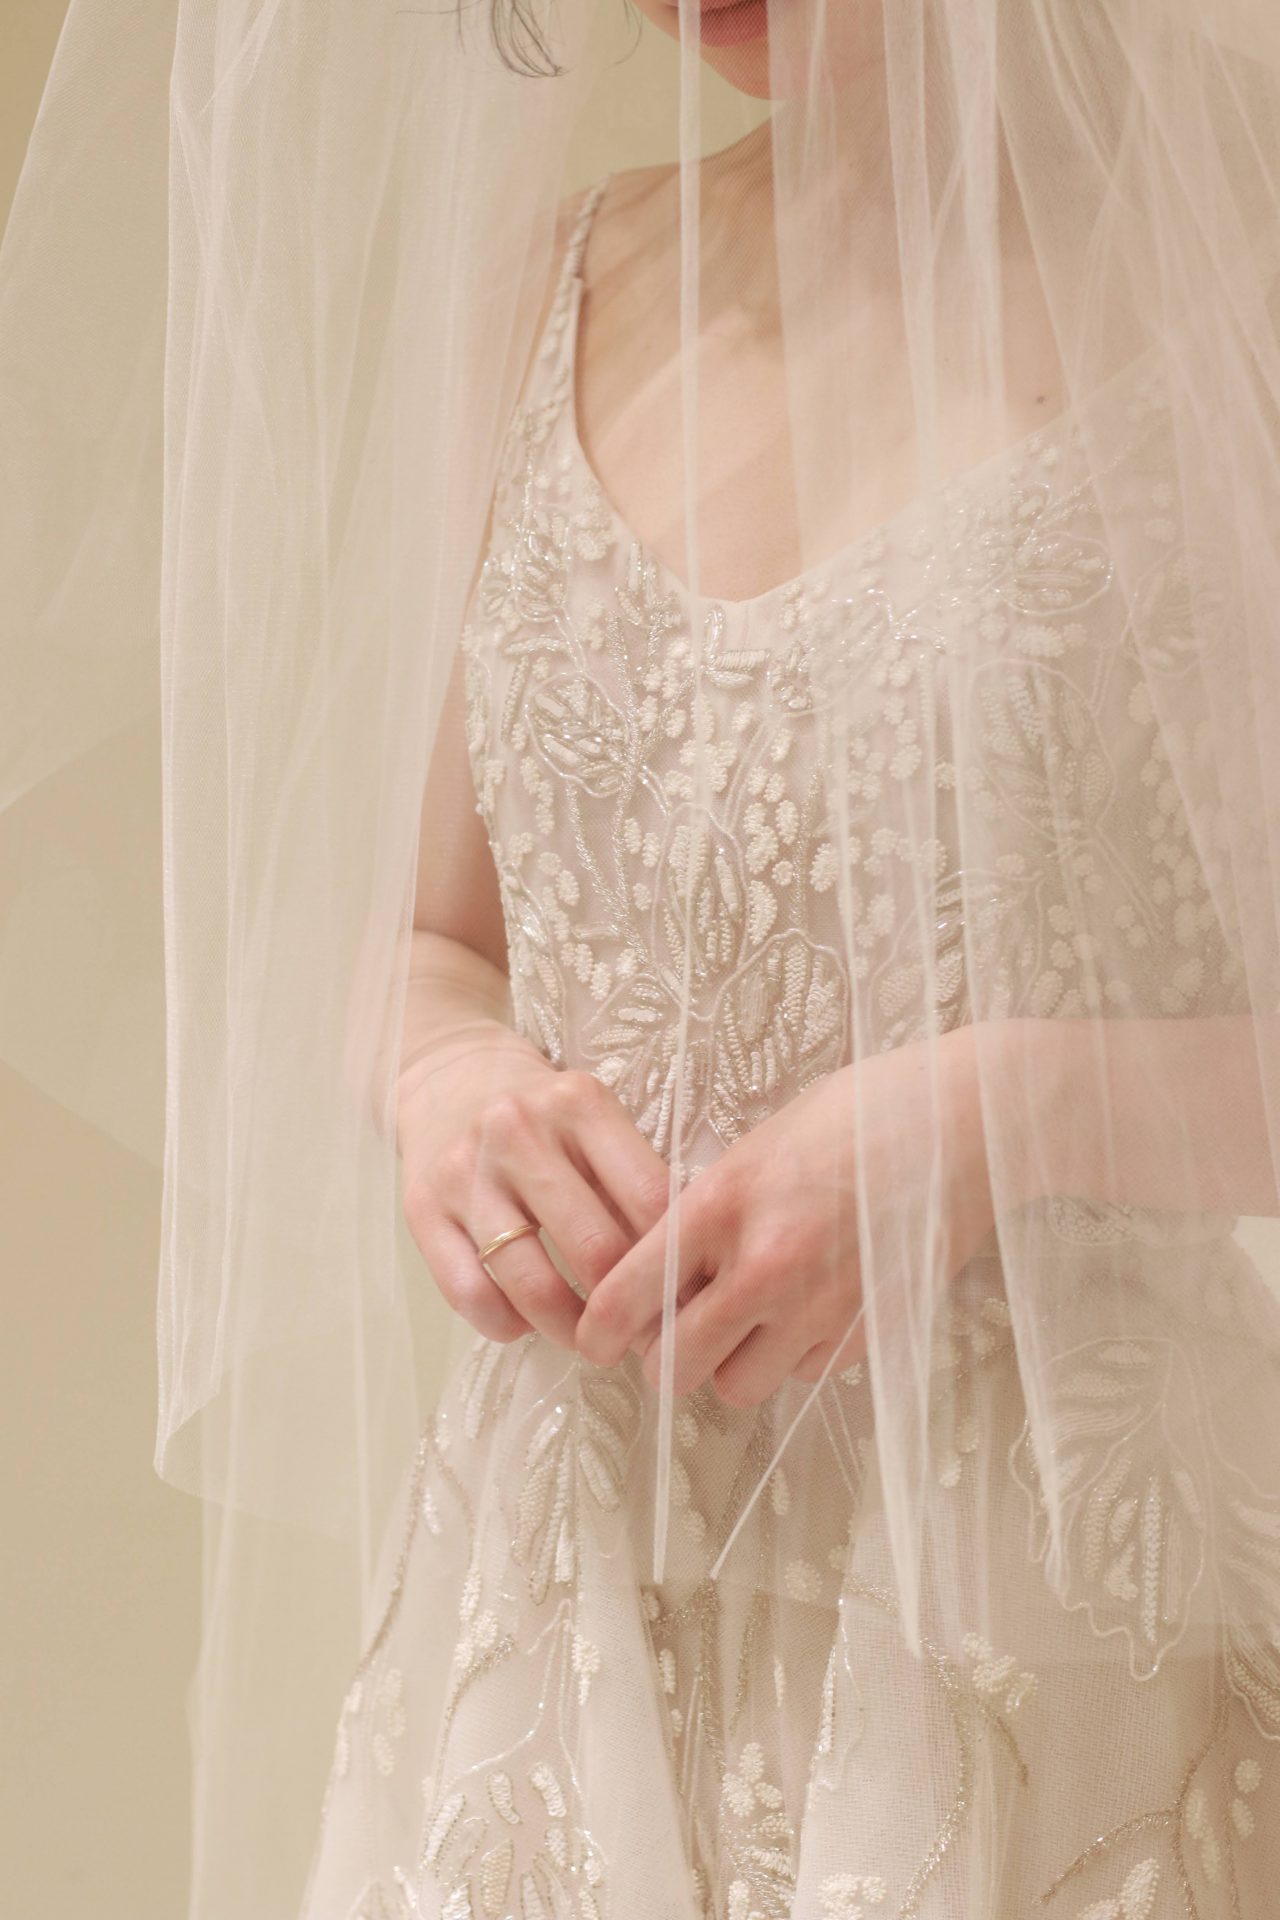 東京の人気結婚式会場、赤坂プリンスクラシックハウスでのご結婚式を予定されている花嫁様におススメの新作ウェディングドレスは、繊細なベールを纏った上からでも存在感を放つ立体的なビーズ刺繍がデコルテを華やかに引き立てます